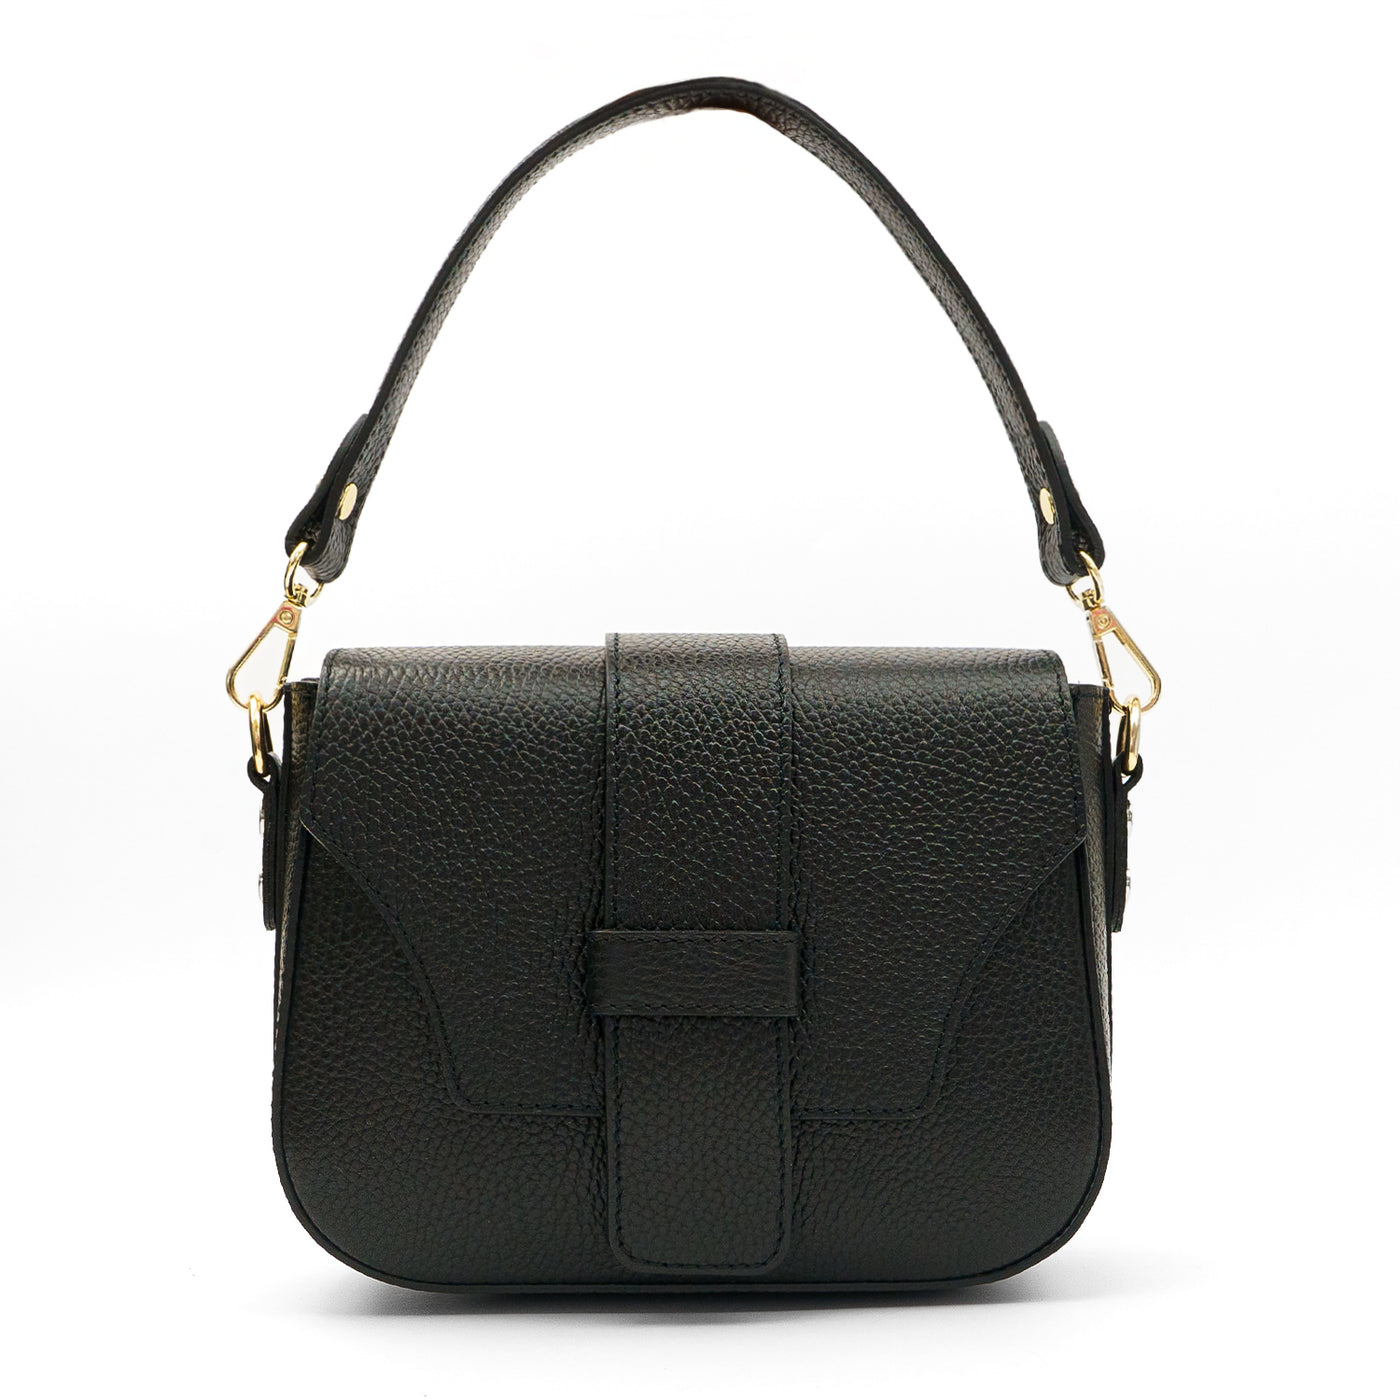 Leather bag "Treviso" Black